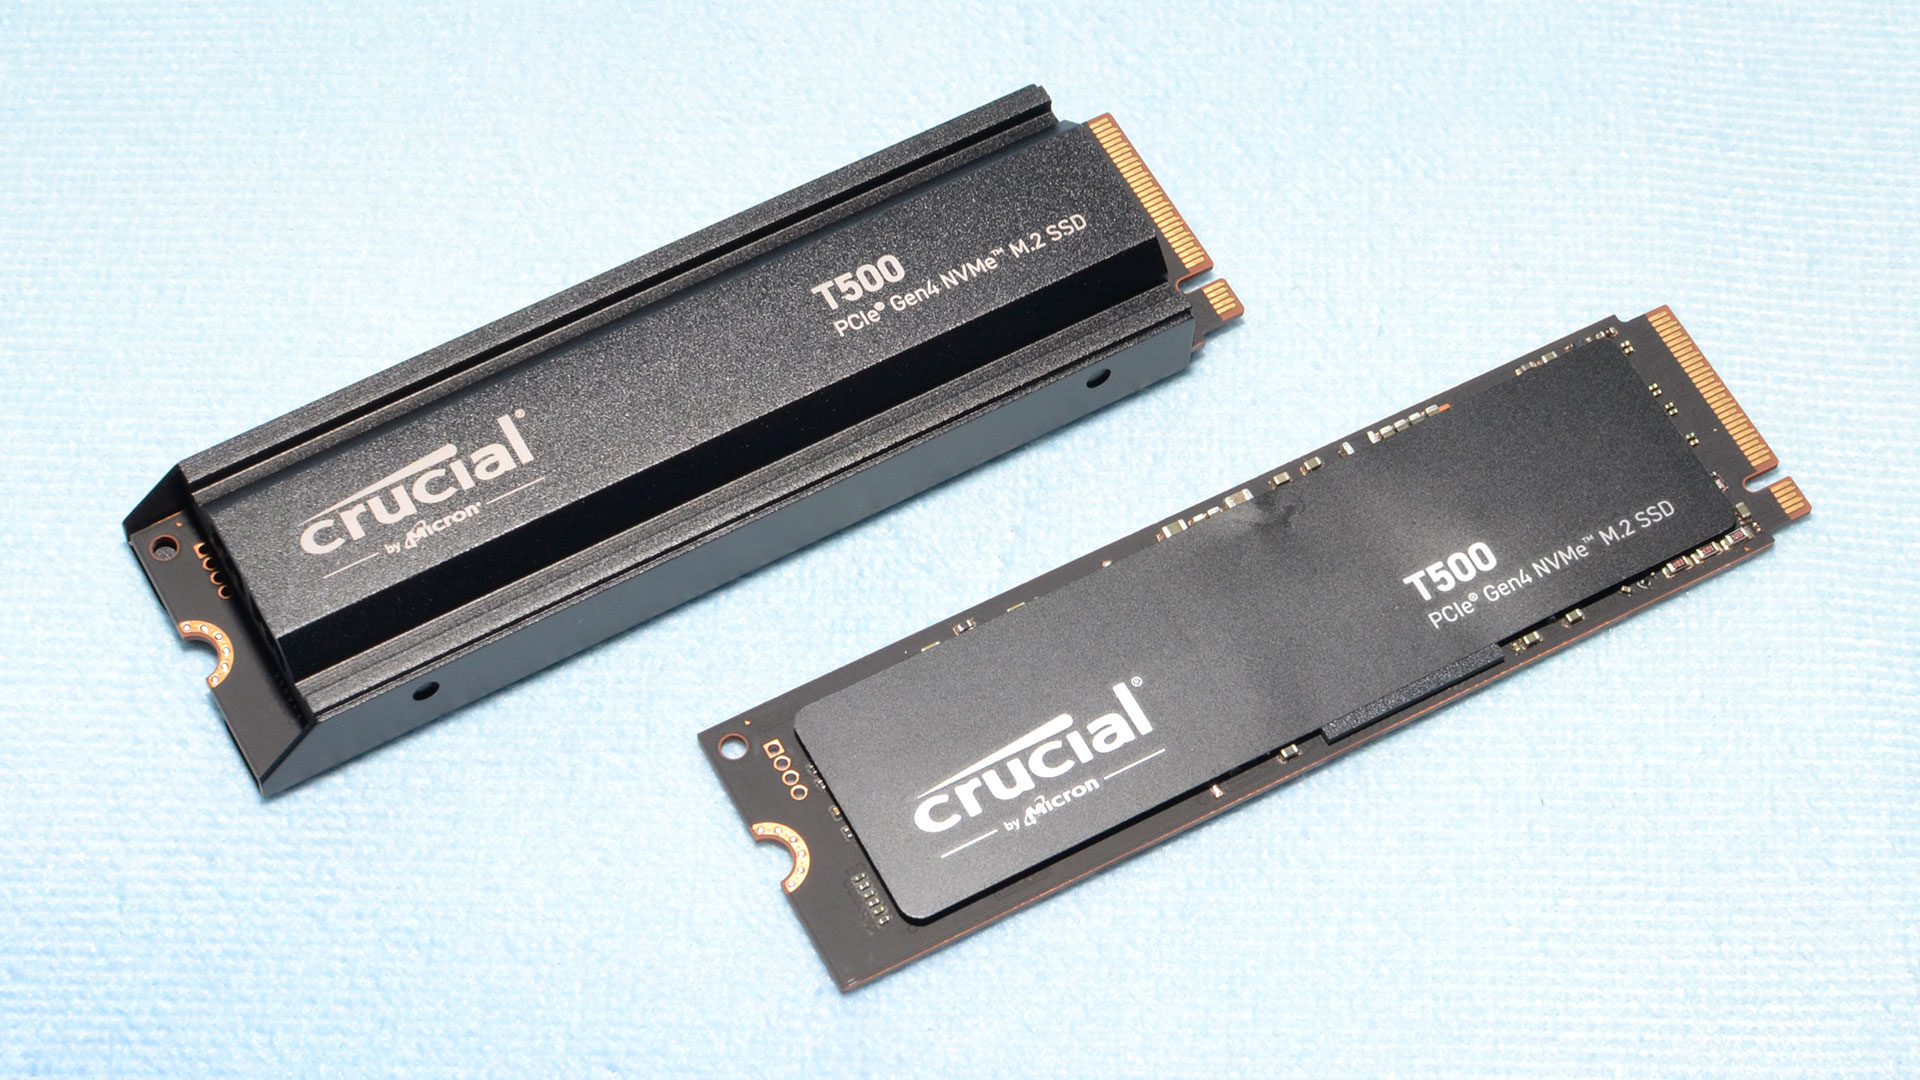 Crucial T500 Gen4 SSD 2TB Review - When 4-channels beats 8-channels